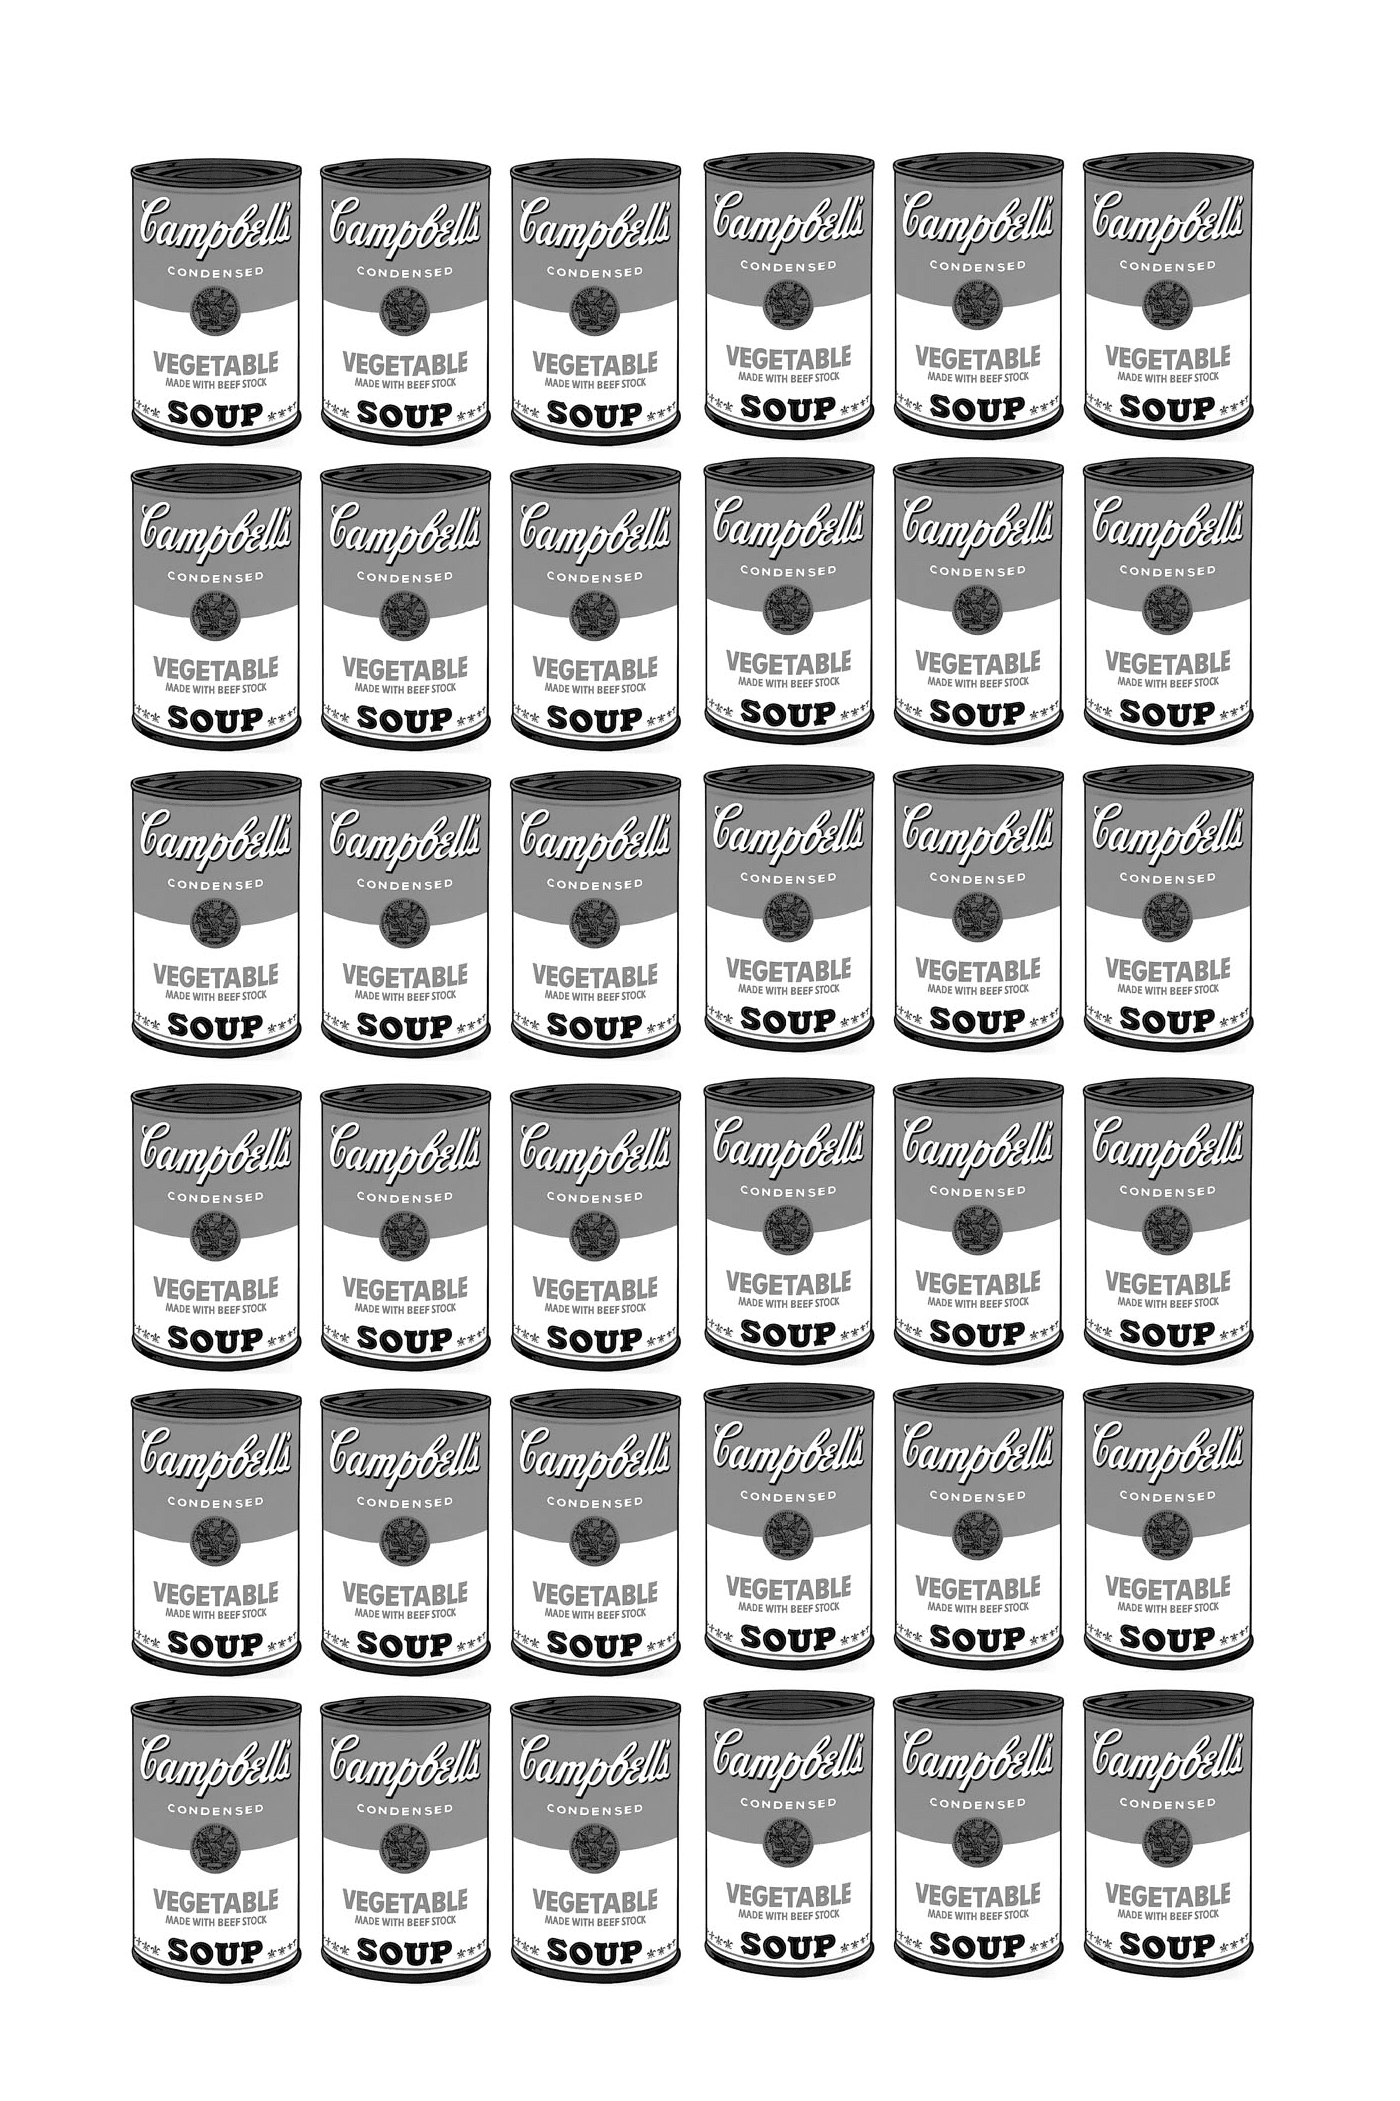   une série de boîtes de soupe Campbell entièrement en noir et blanc selon Warhol 